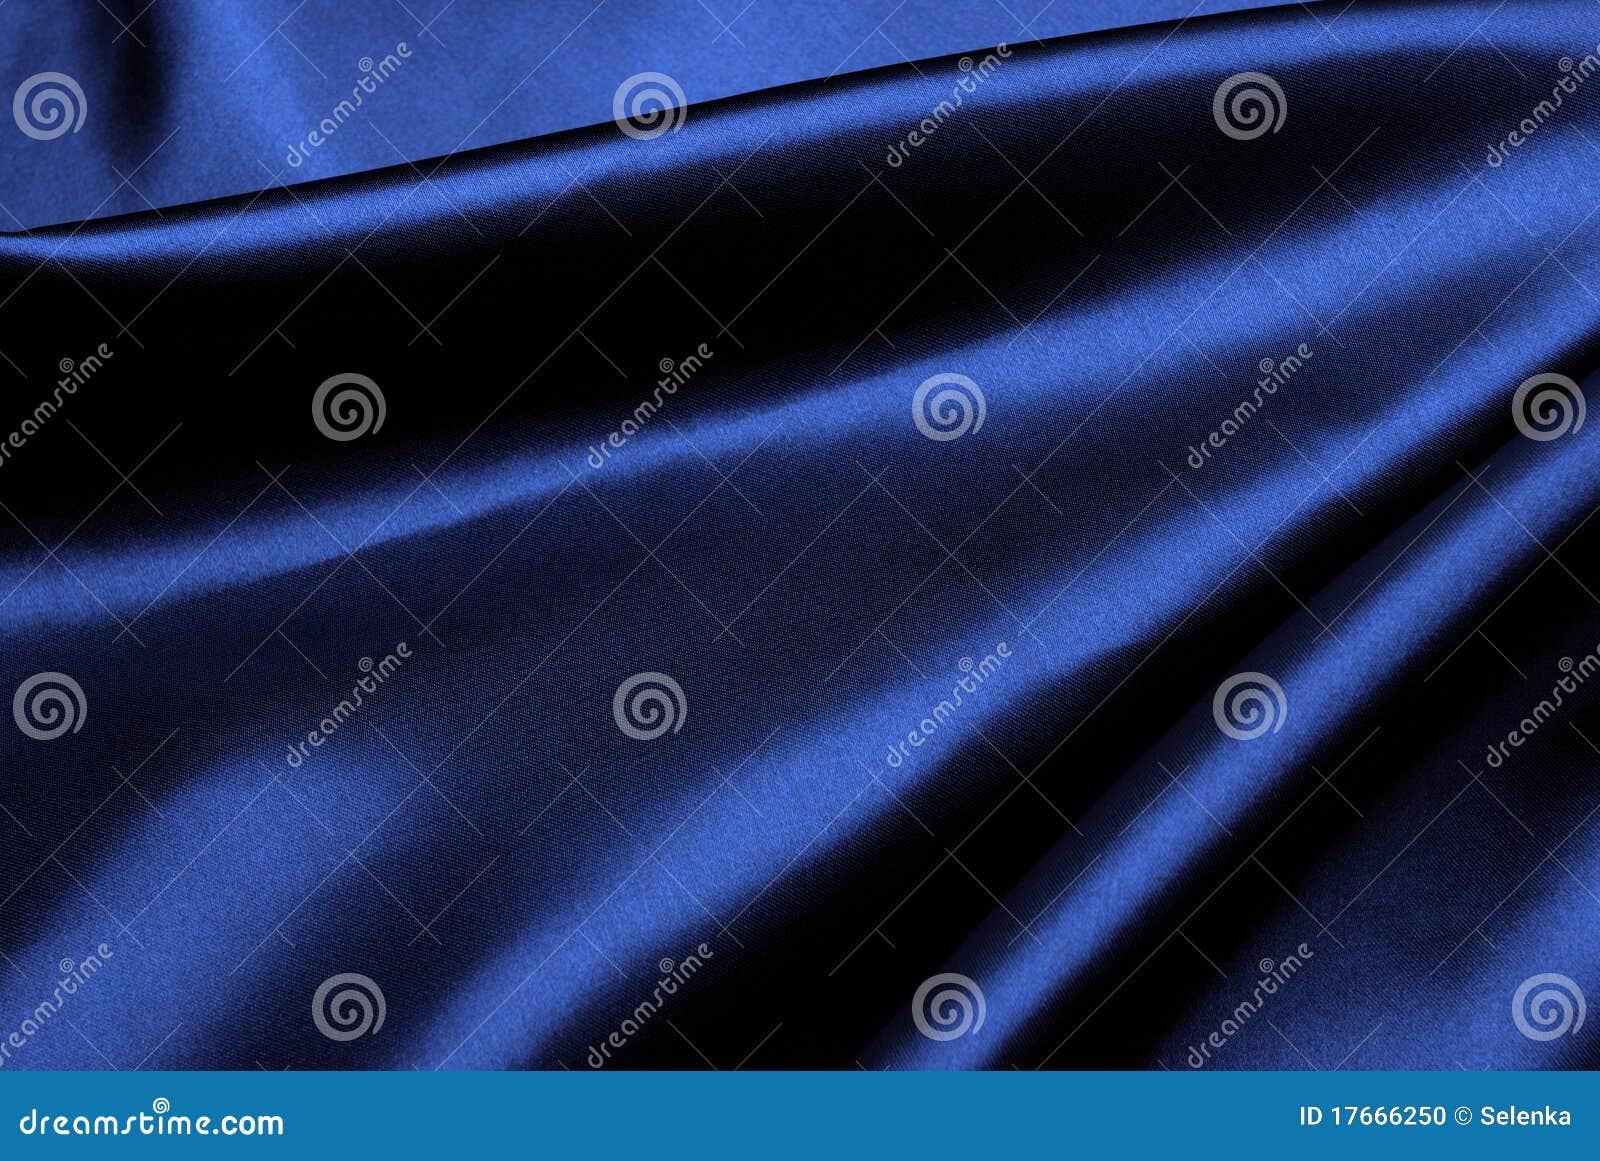 blue silk background.